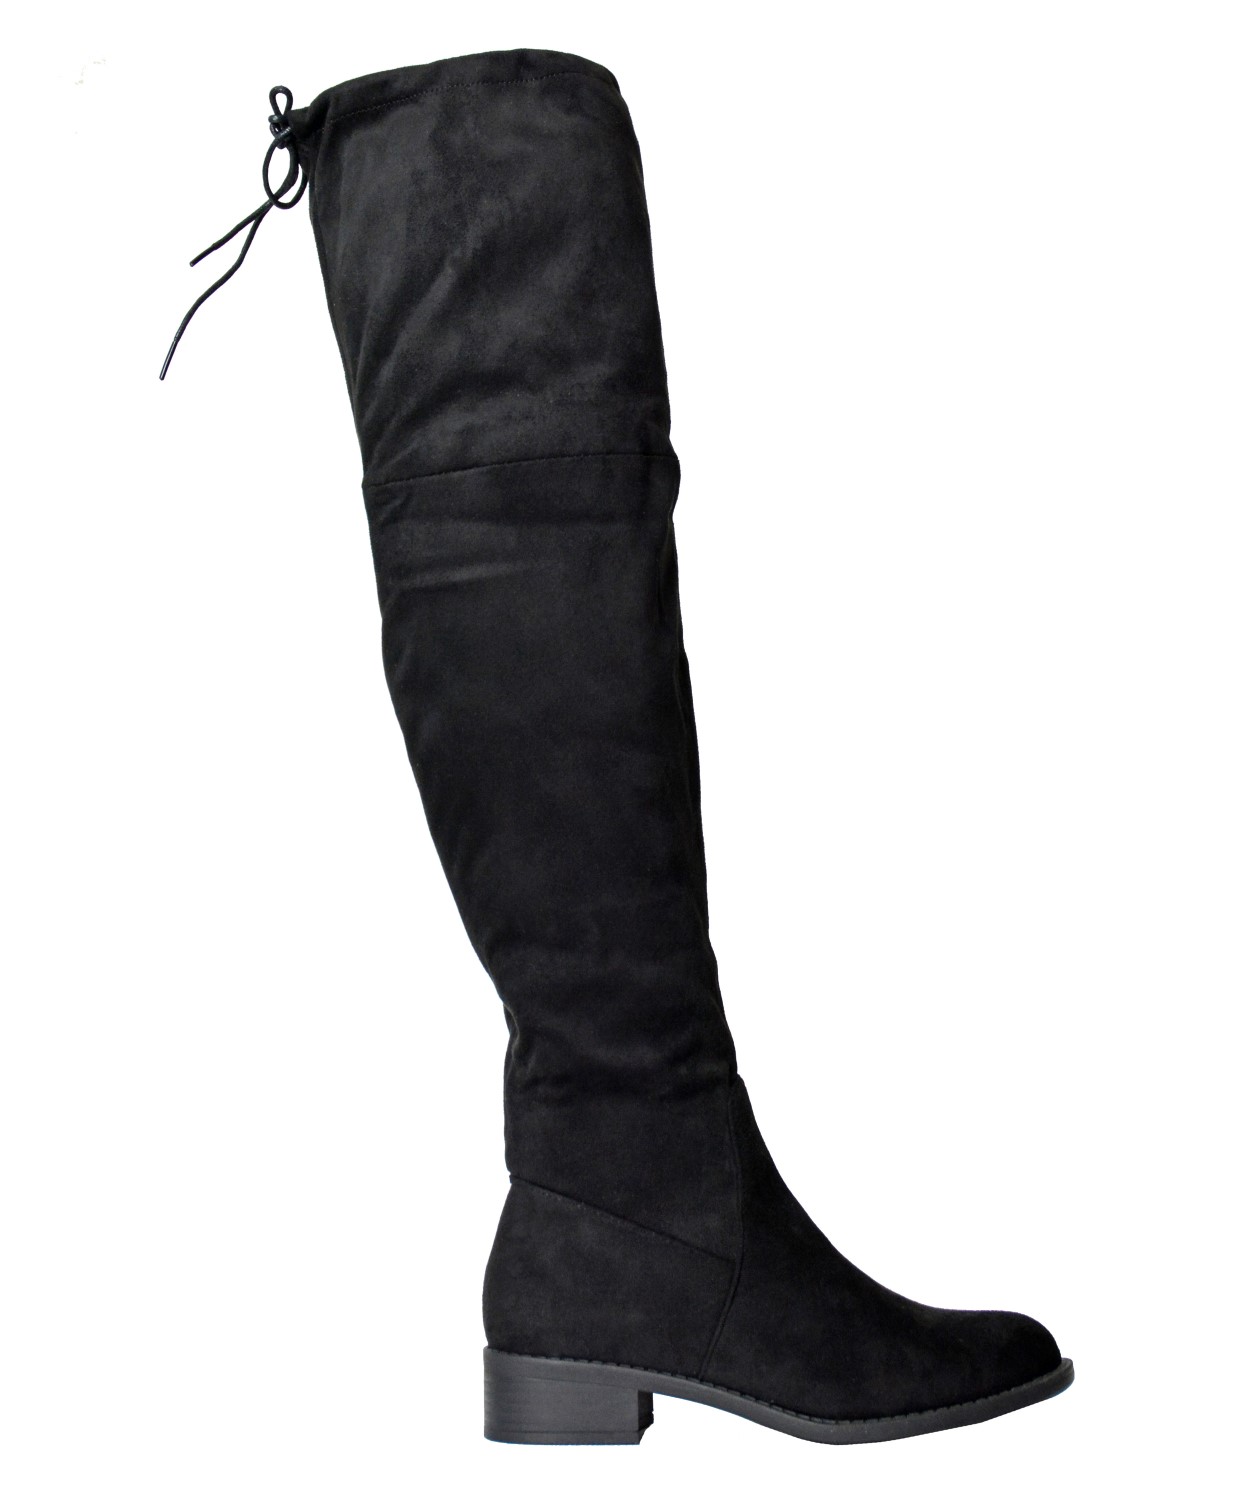 Γυναικείες μπότες πάνω απο το γόνατο μαύρες JL50